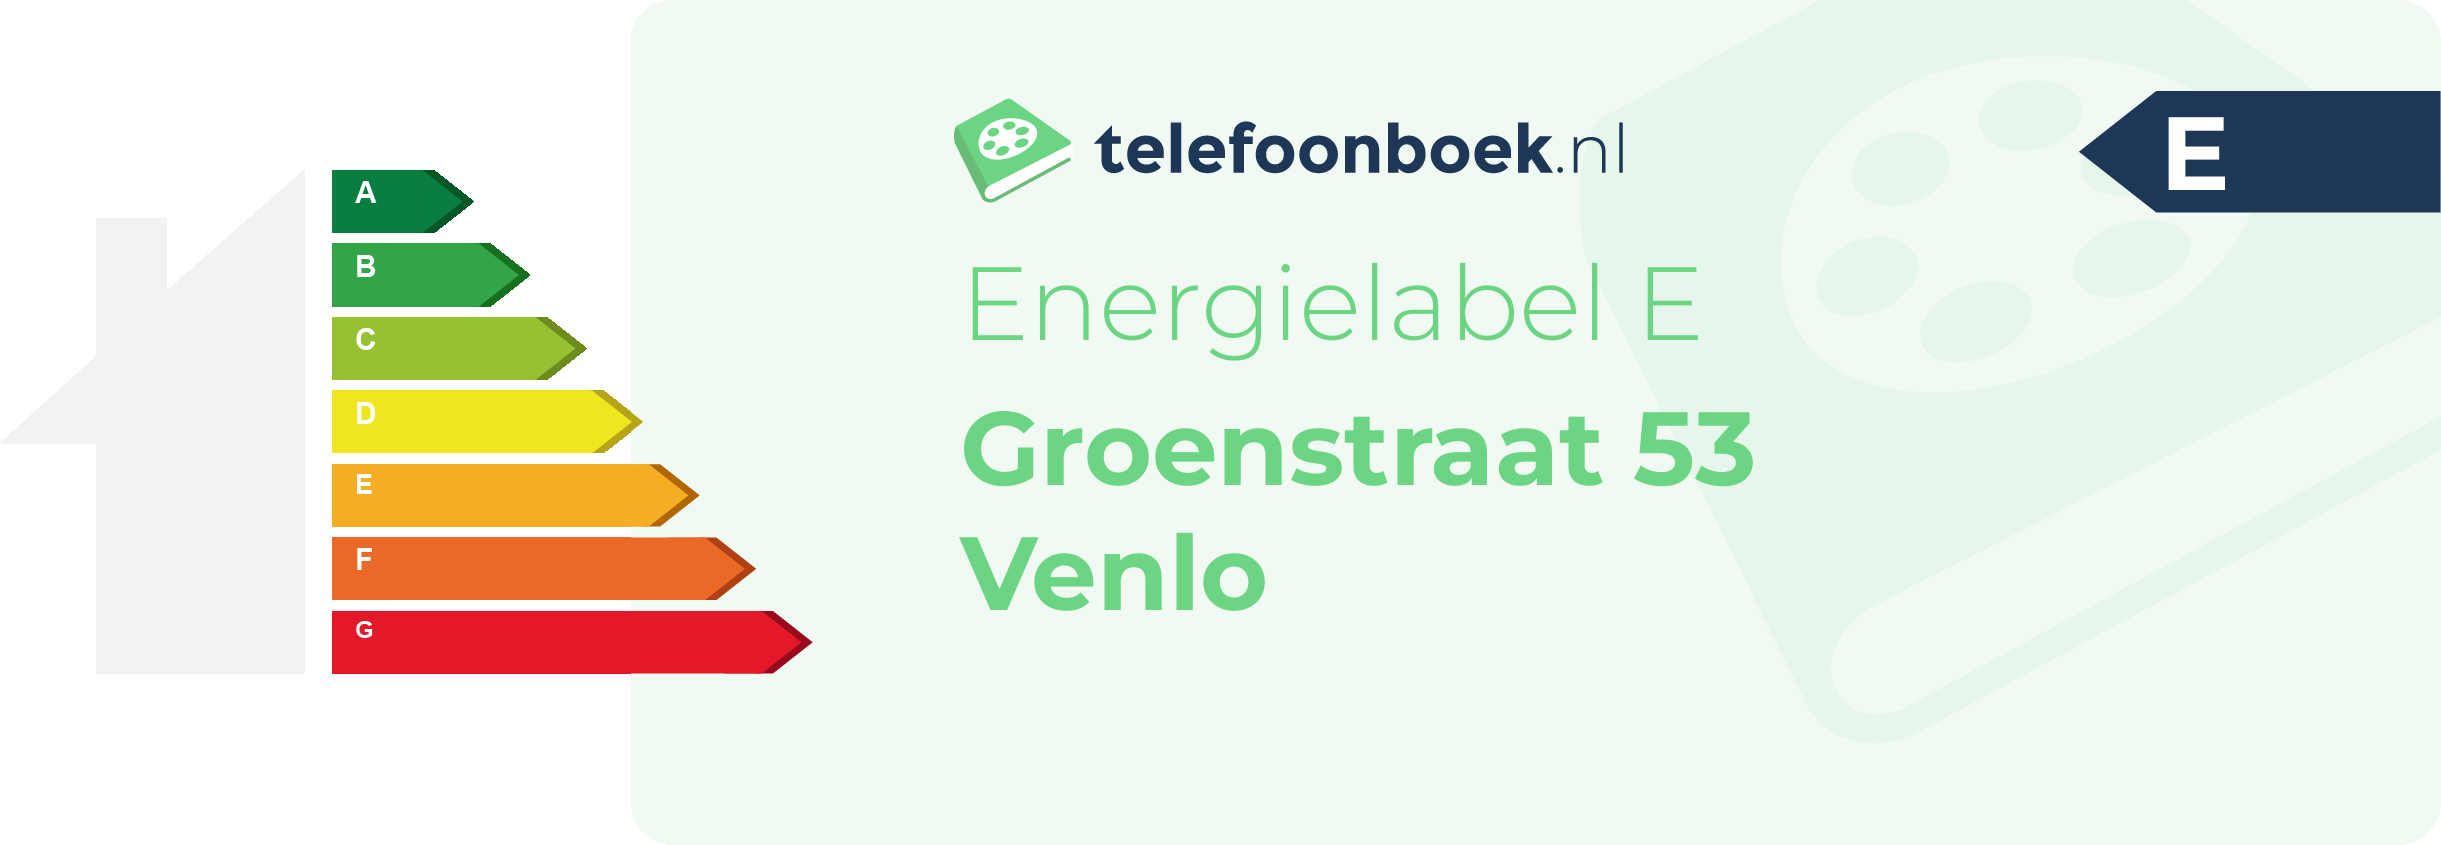 Energielabel Groenstraat 53 Venlo